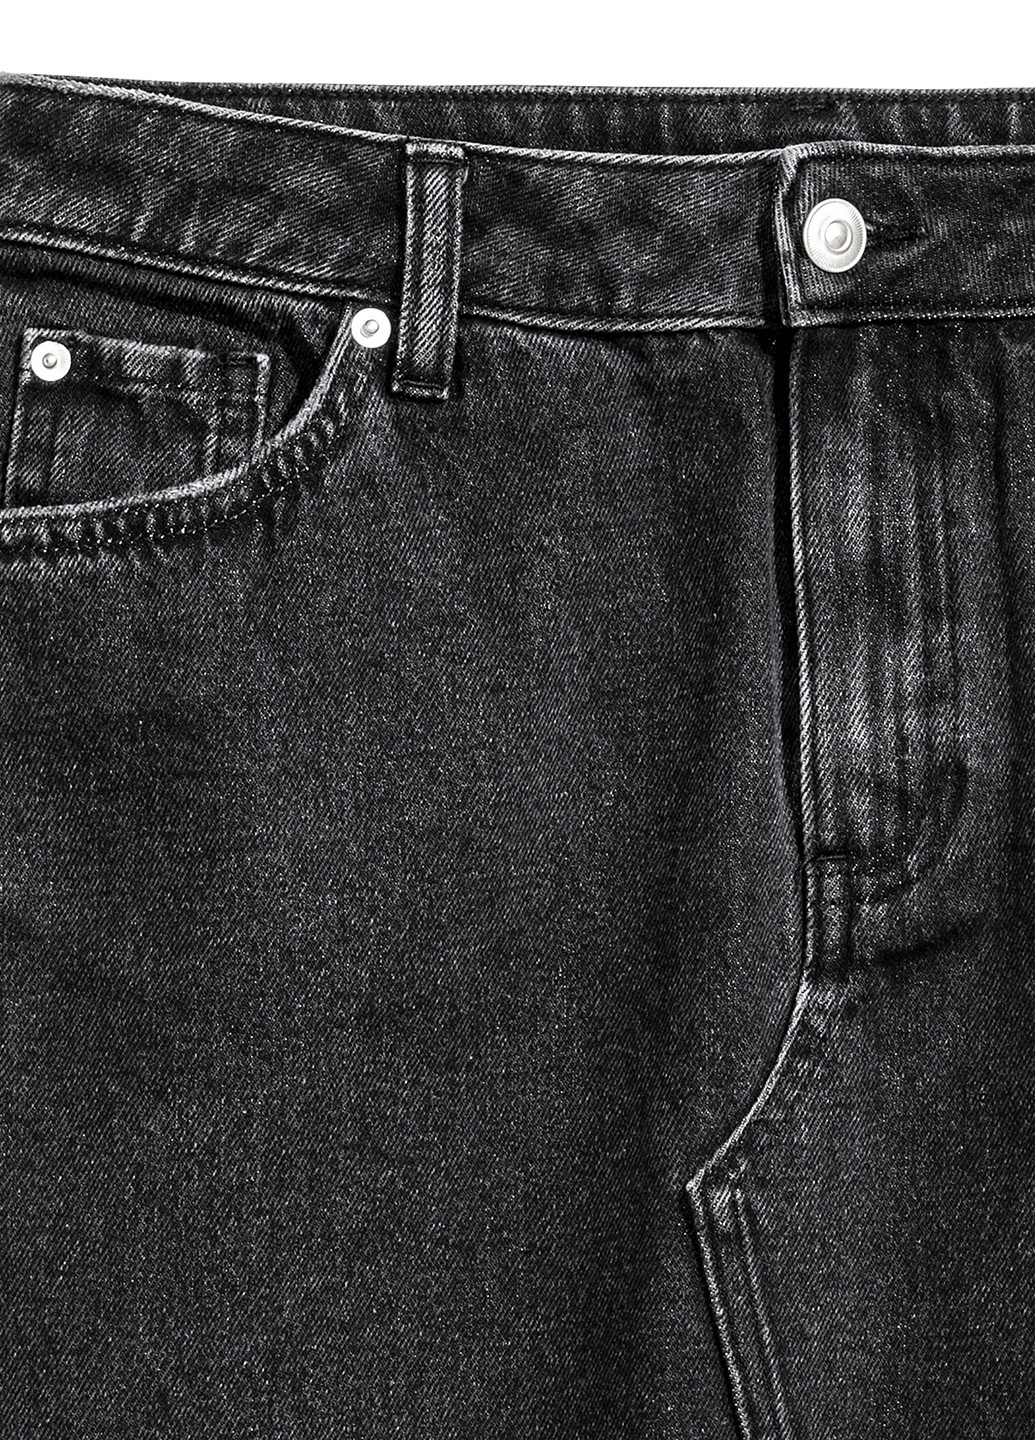 Черная джинсовая юбка H&M мини